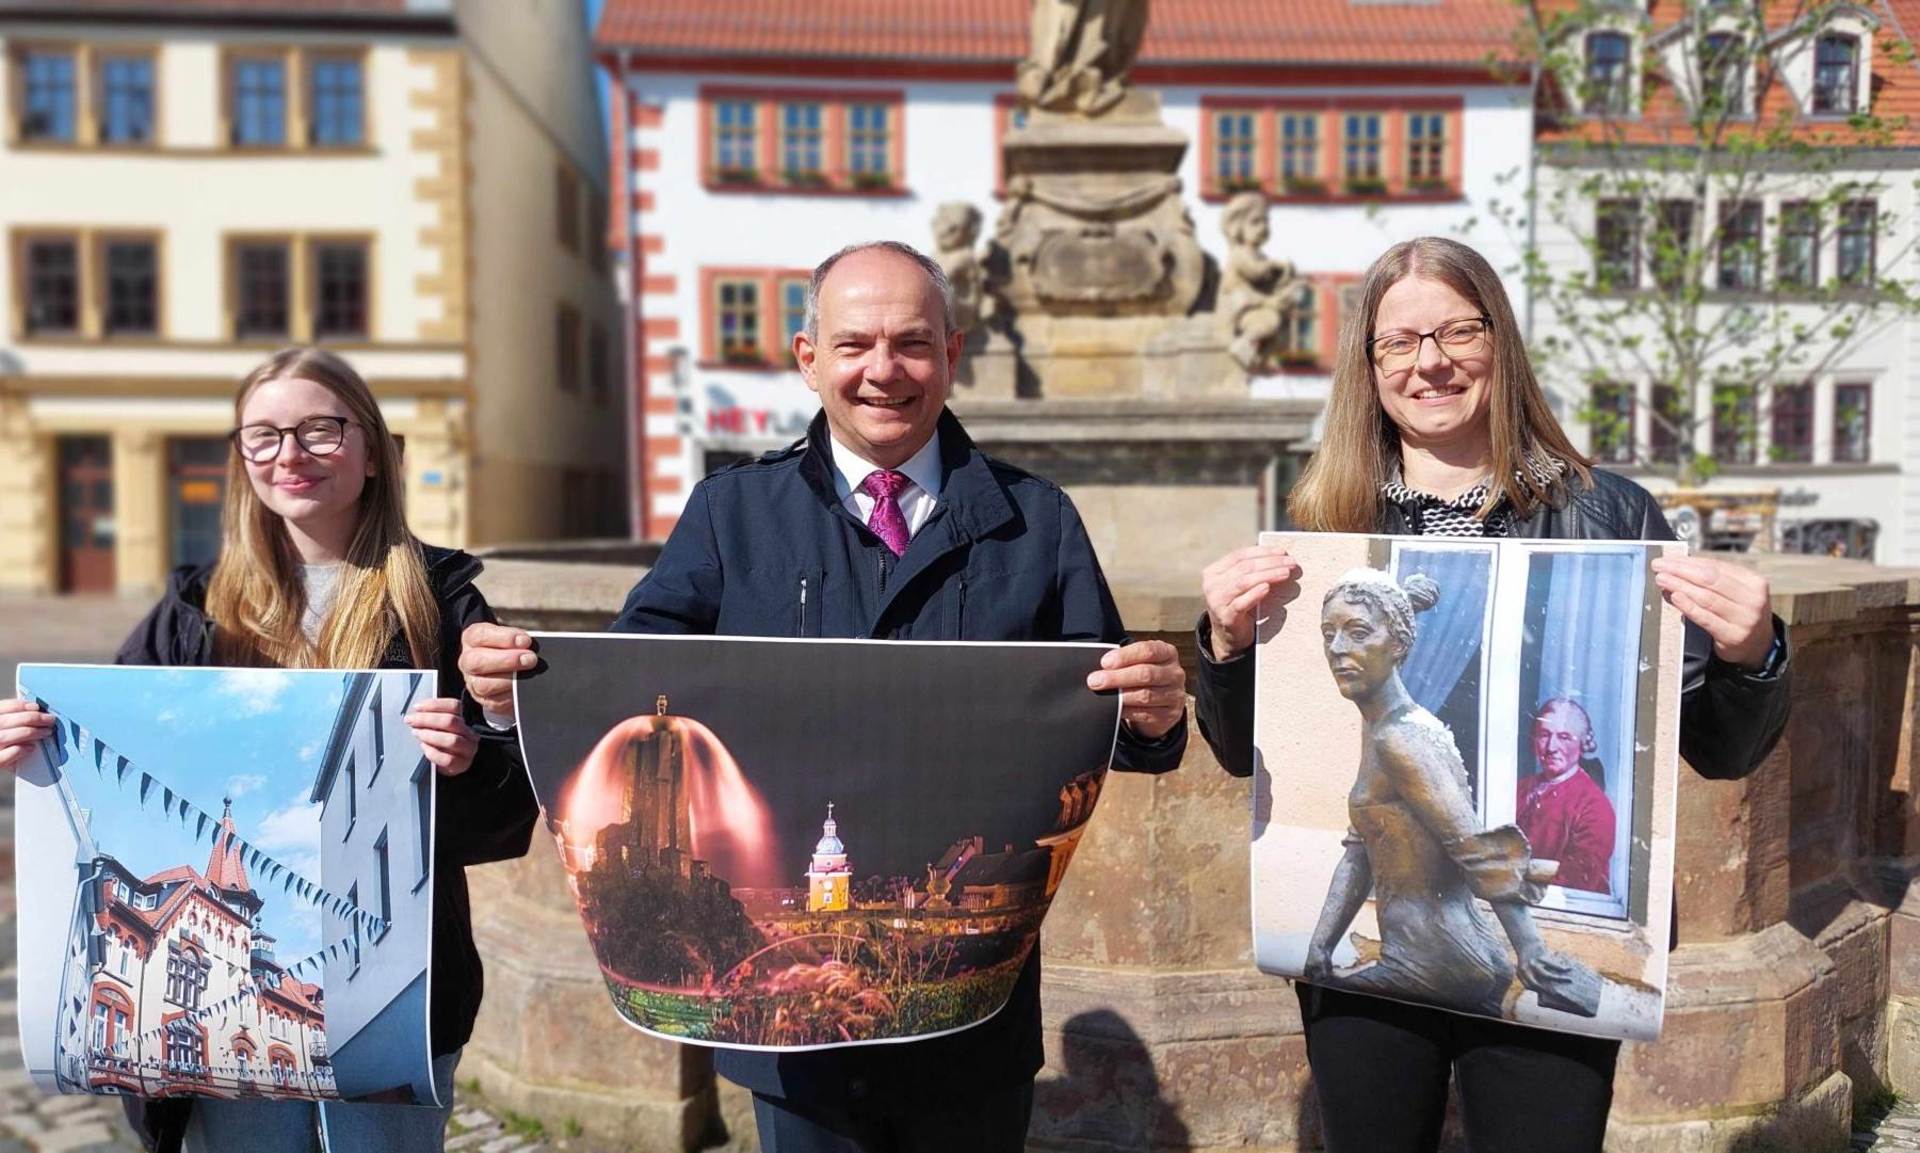 Oberbürgermeister, Knuth Kreuch gemeinsam mit zwei Bürgerinnen vor dem Marktbrunnen in Gotha